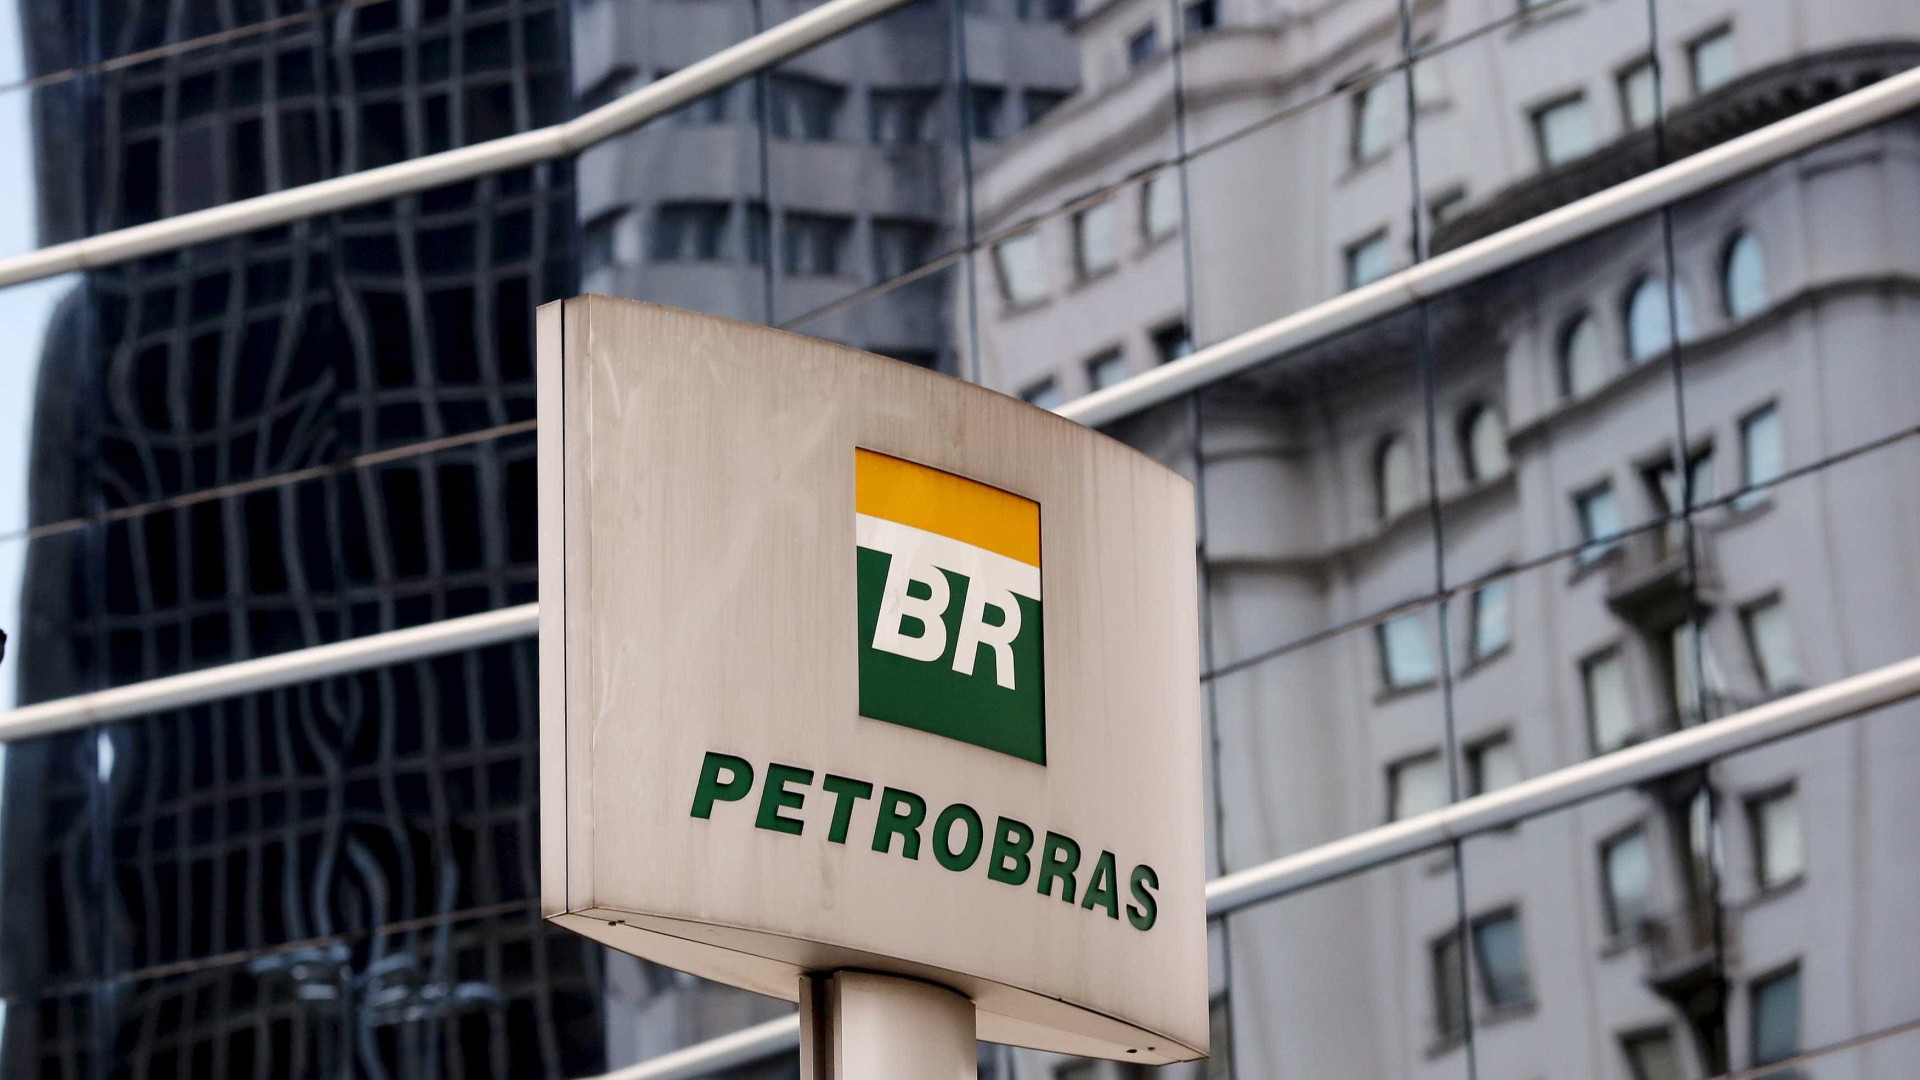 Operação busca prender 11 suspeitos de
furtar dutos da Petrobras no Rio